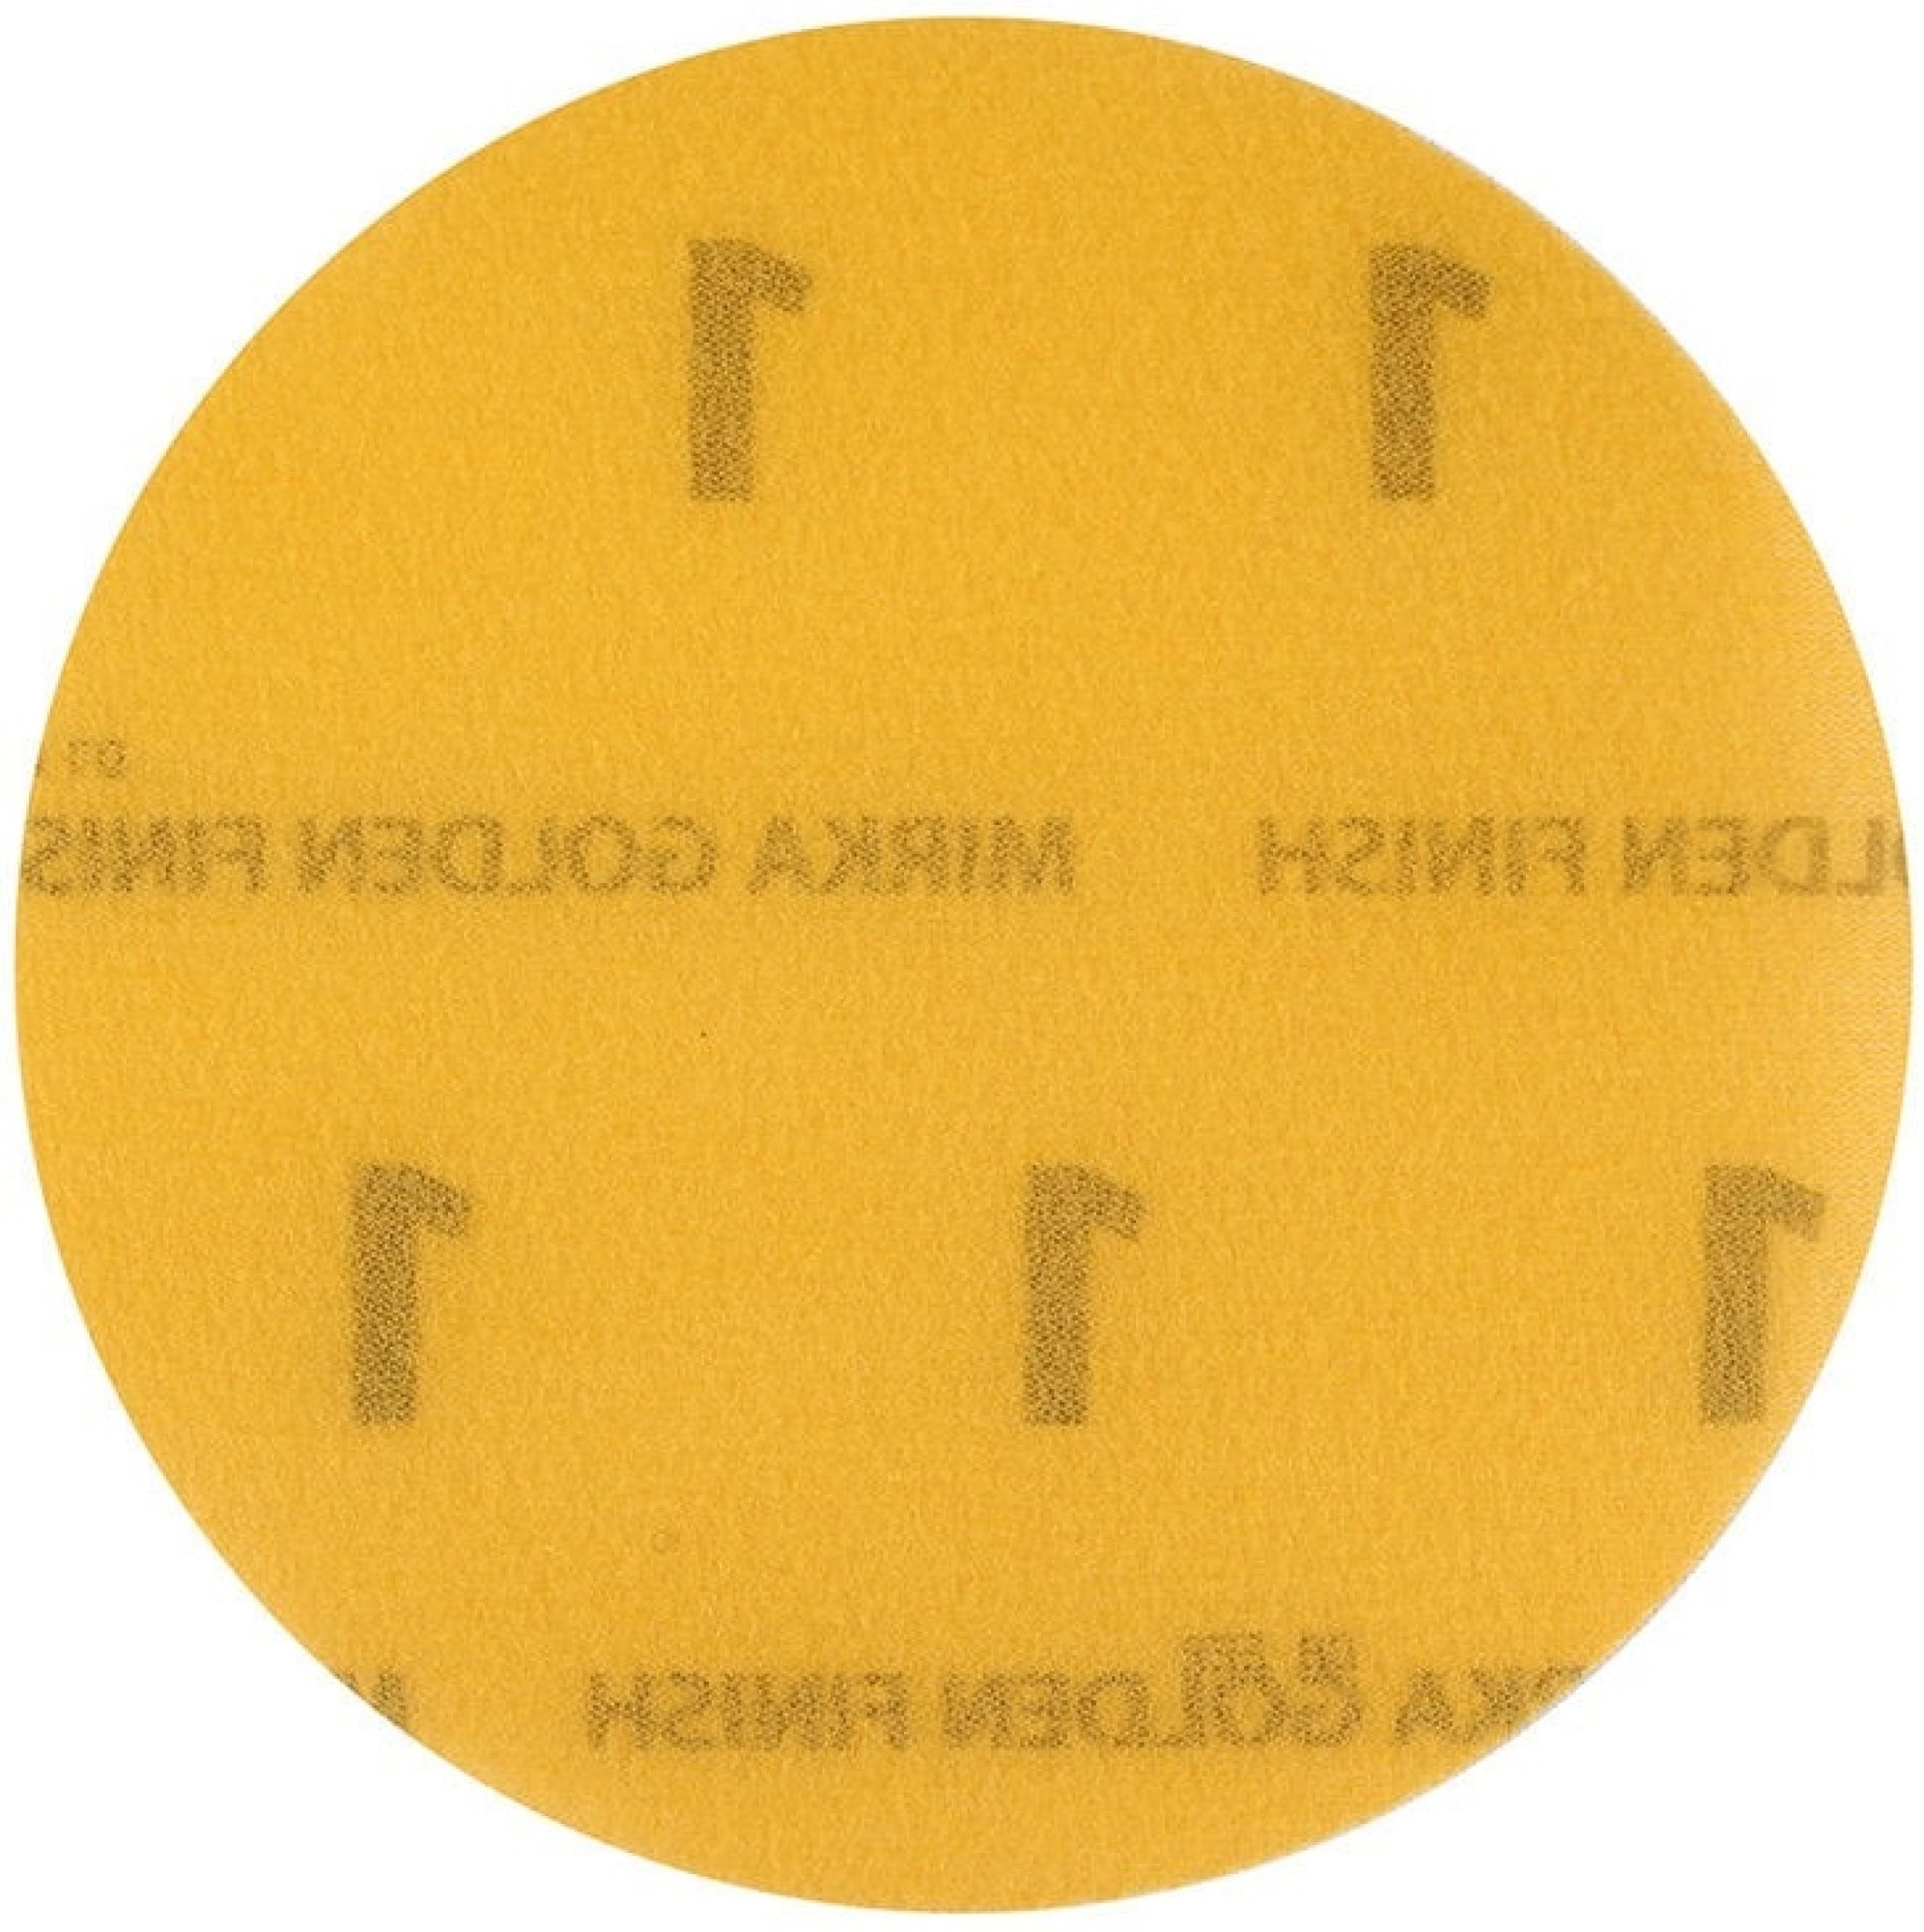 Mirka® Golden Finish-1 FM6JT05001GF, Ø 77 mm, Ungelocht, Kletthaftend, Schleifscheibe mit Aluminiumkorn, Für Finish- und Polierarbeiten